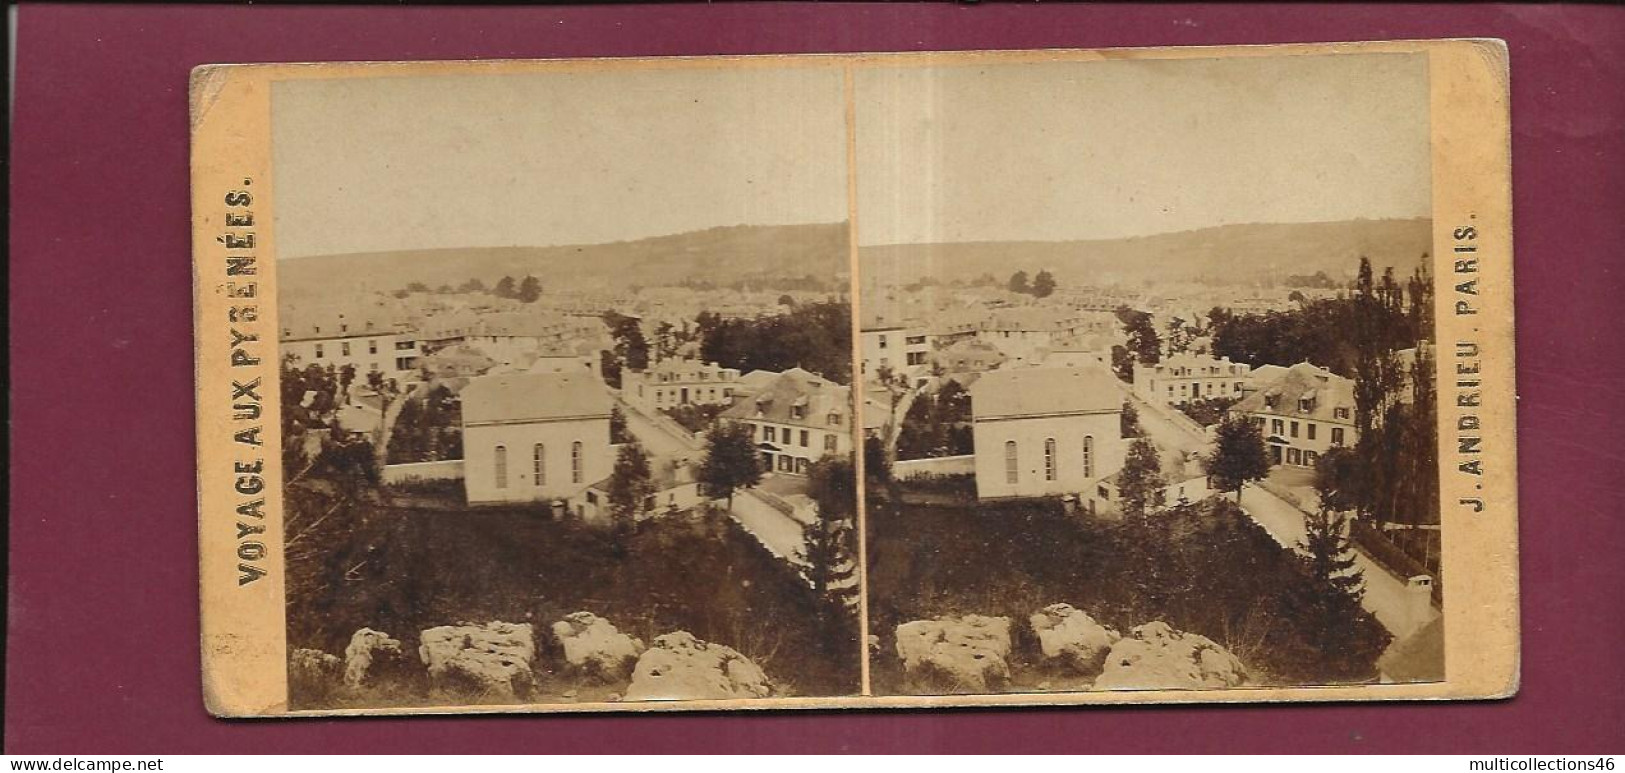 190424 - PHOTO STEREO PAPIER - VOYAGE AUX PYRENEES J ANDRIEU PARIS - BAGNERES DE BIGORRE Vue Prise De Lapeyrère - Stereoscopic